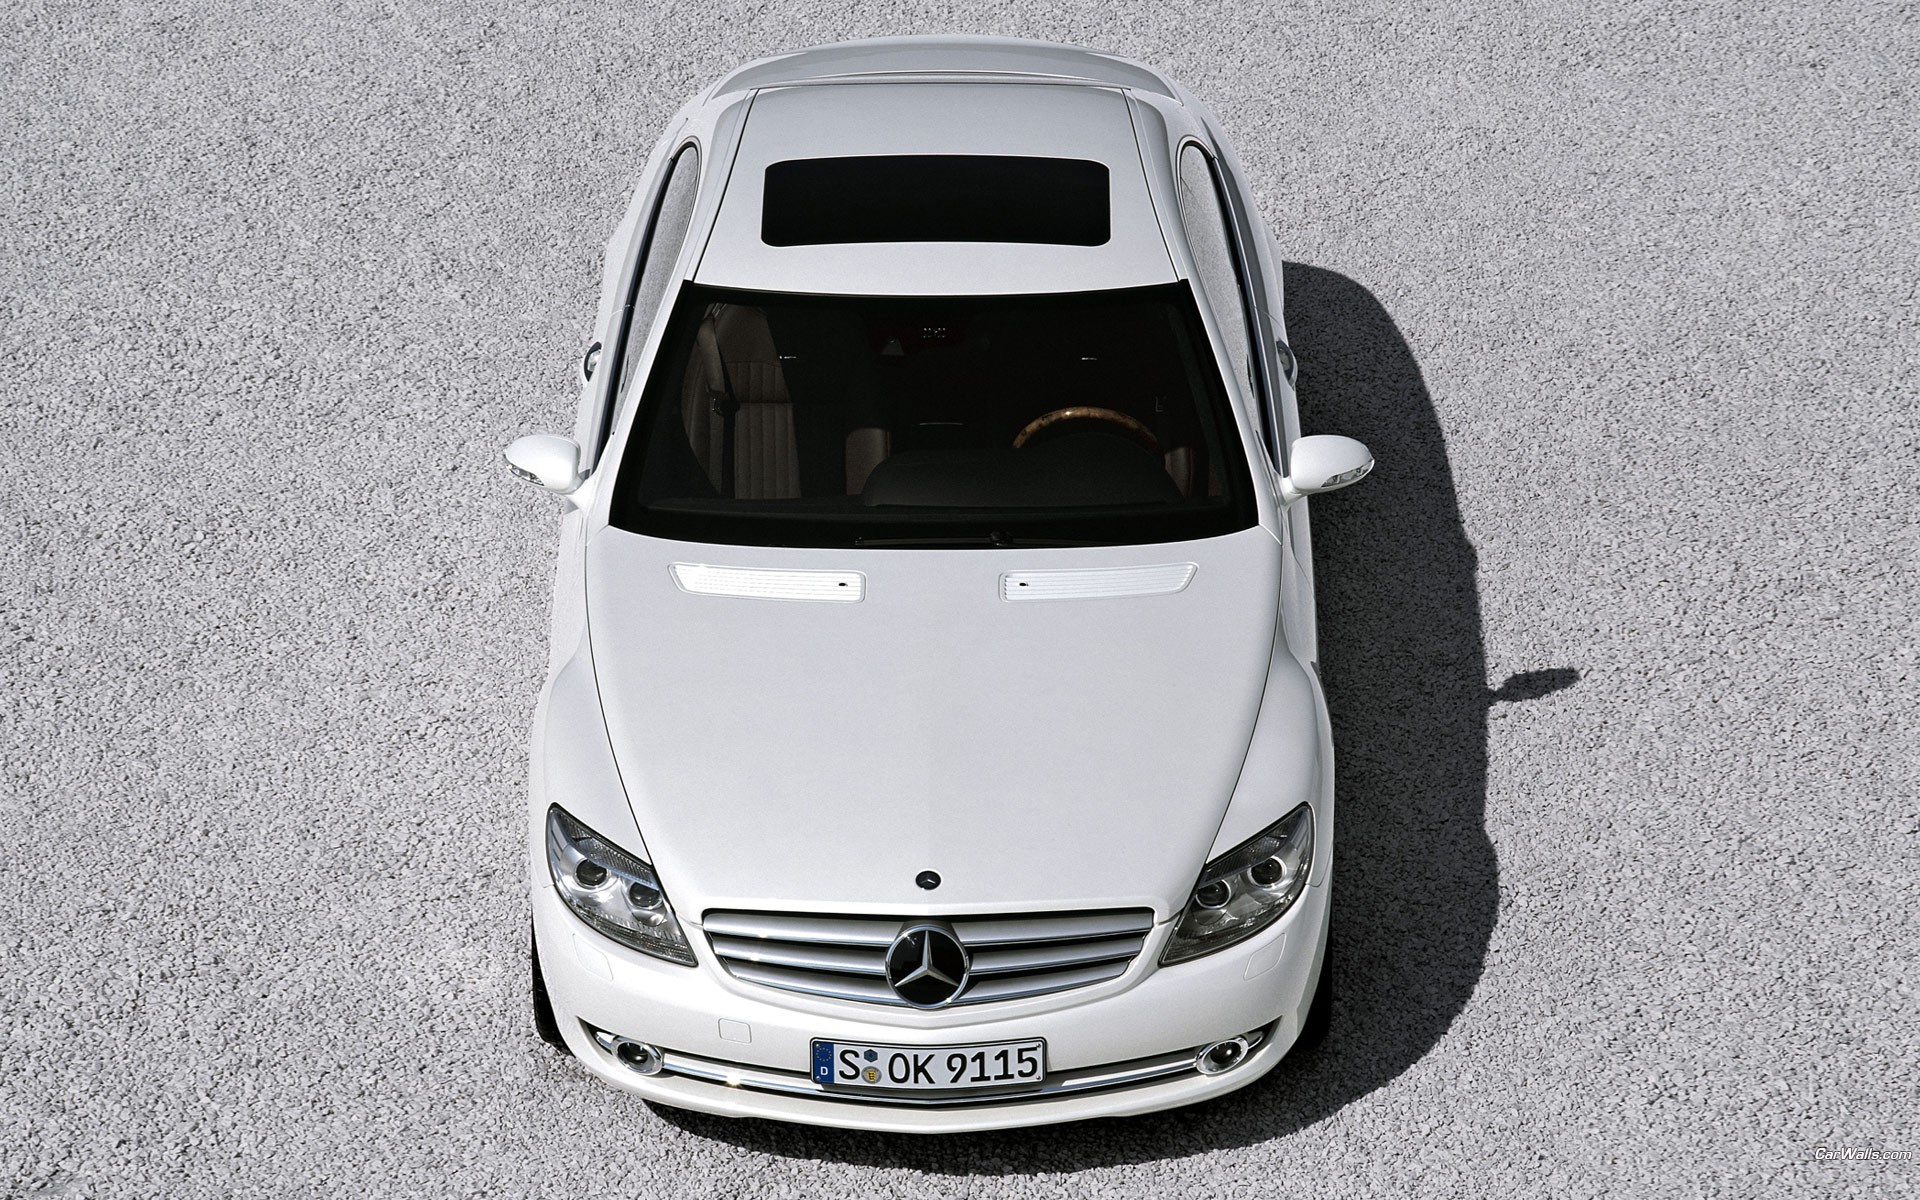 cars, Vehicles, Mercedes benz Wallpaper